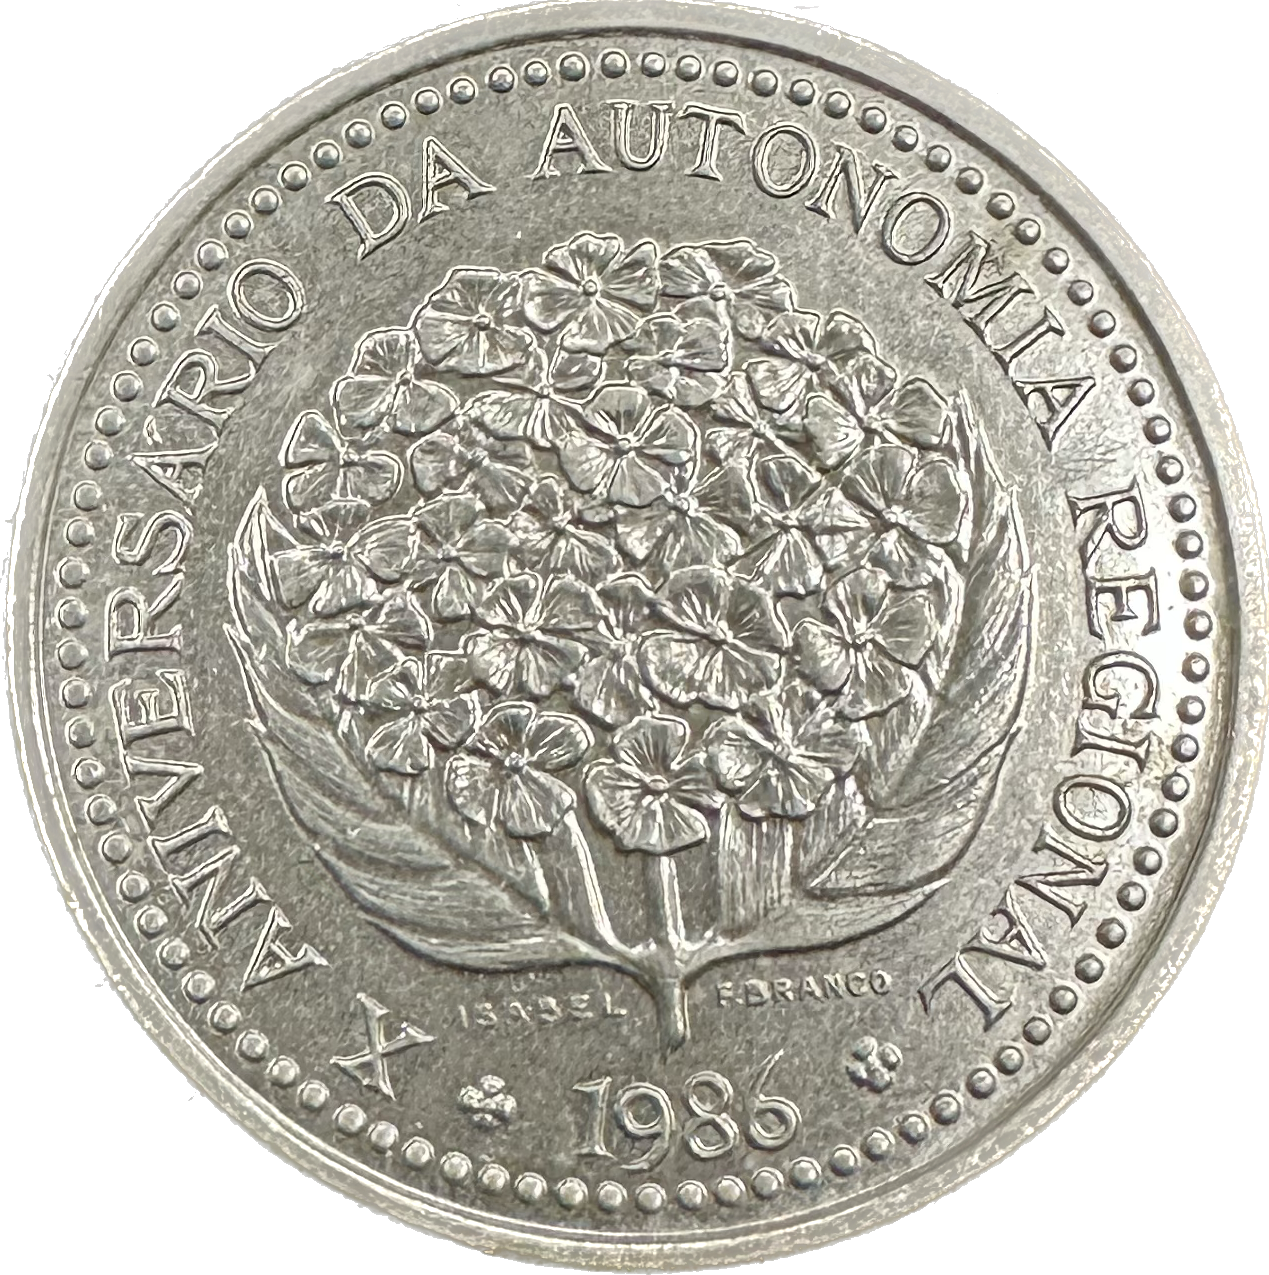 Portugal 100 Escudos 1986 Coin